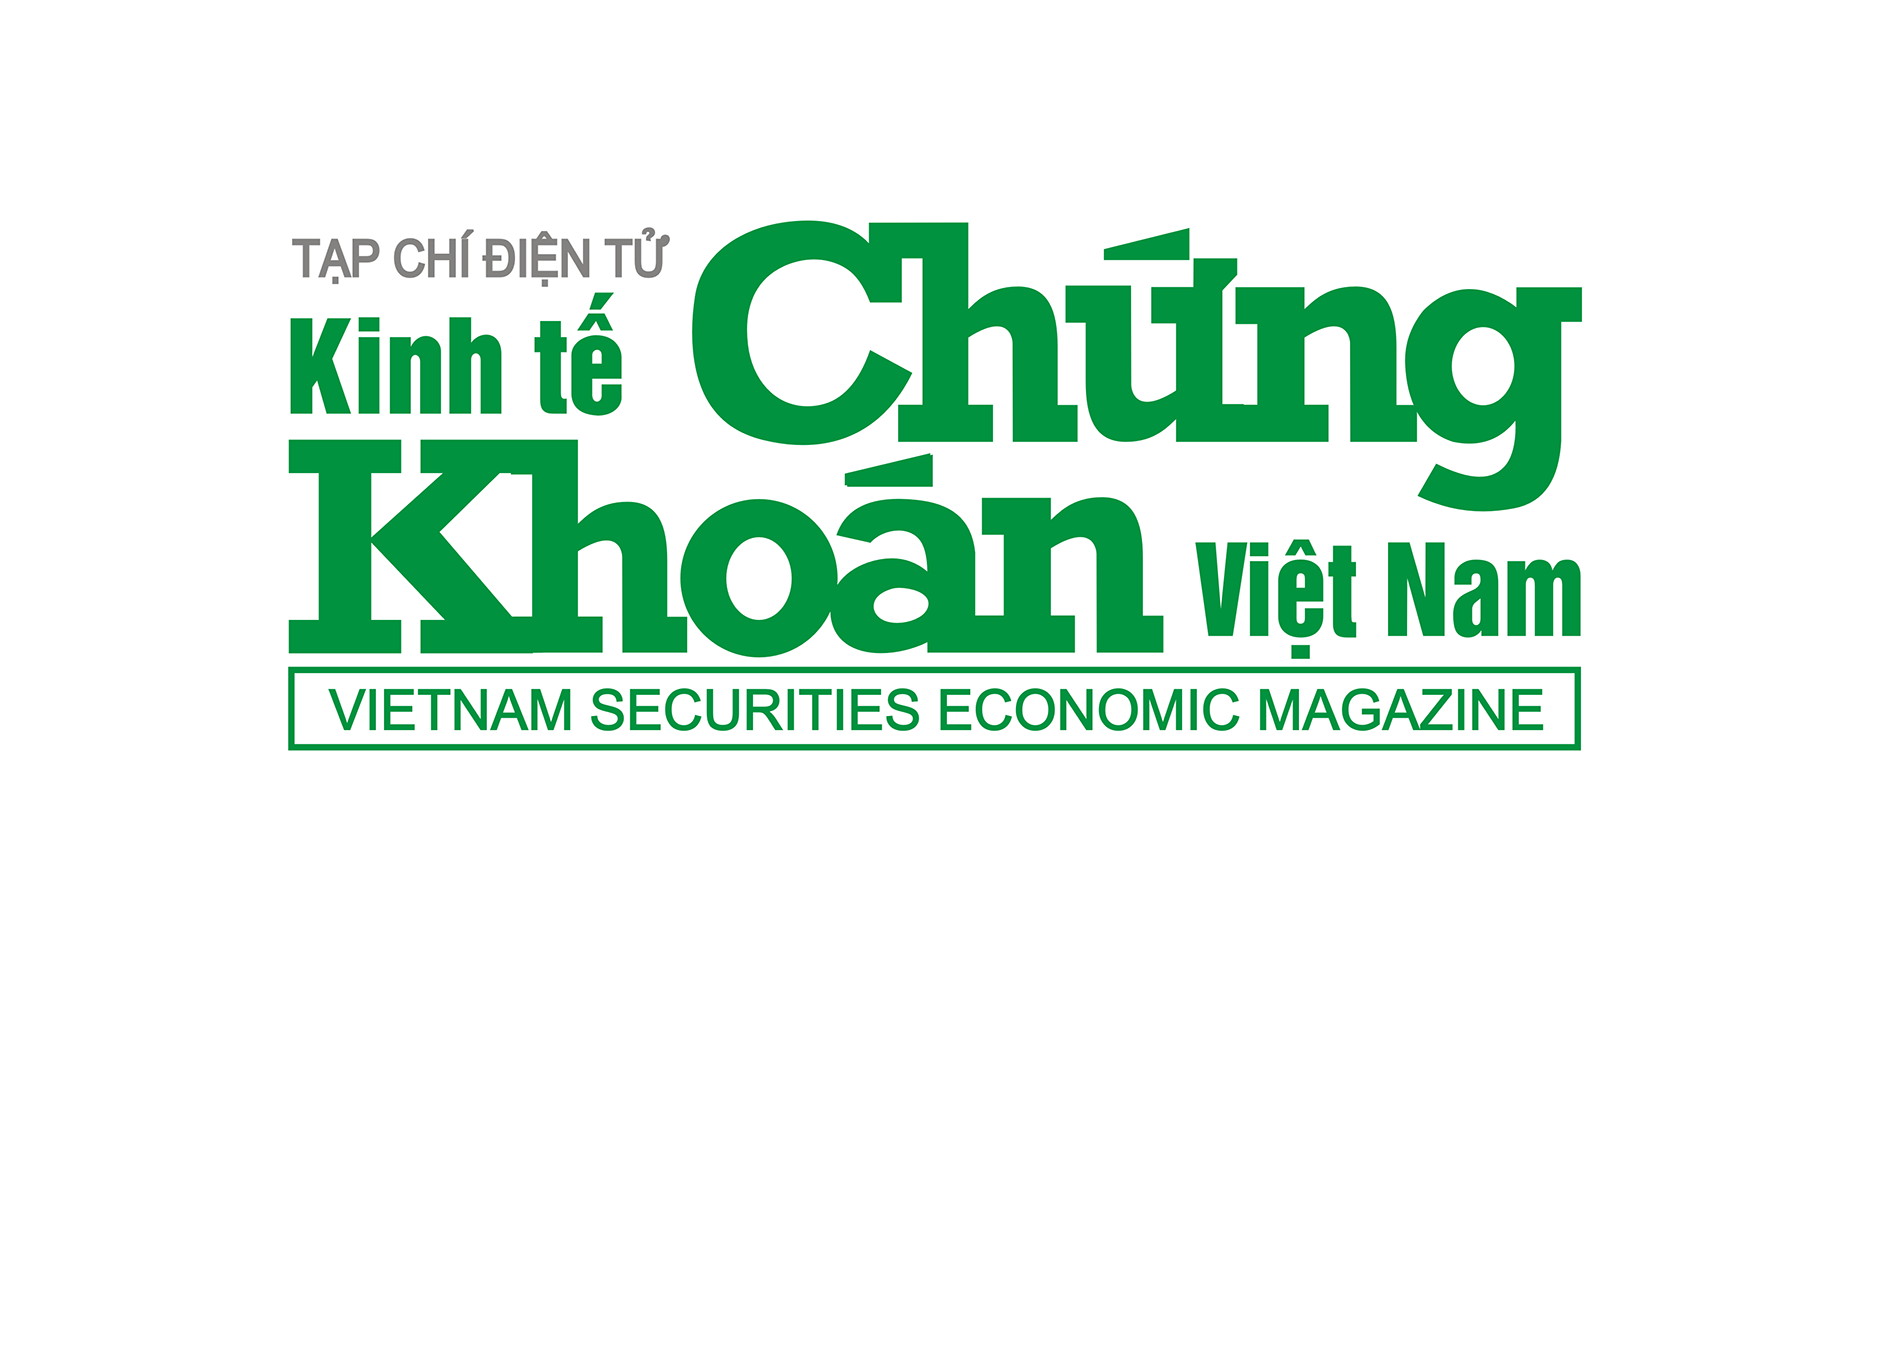 Tạp chí điện tử Kinh tế Chứng khoán Việt Nam